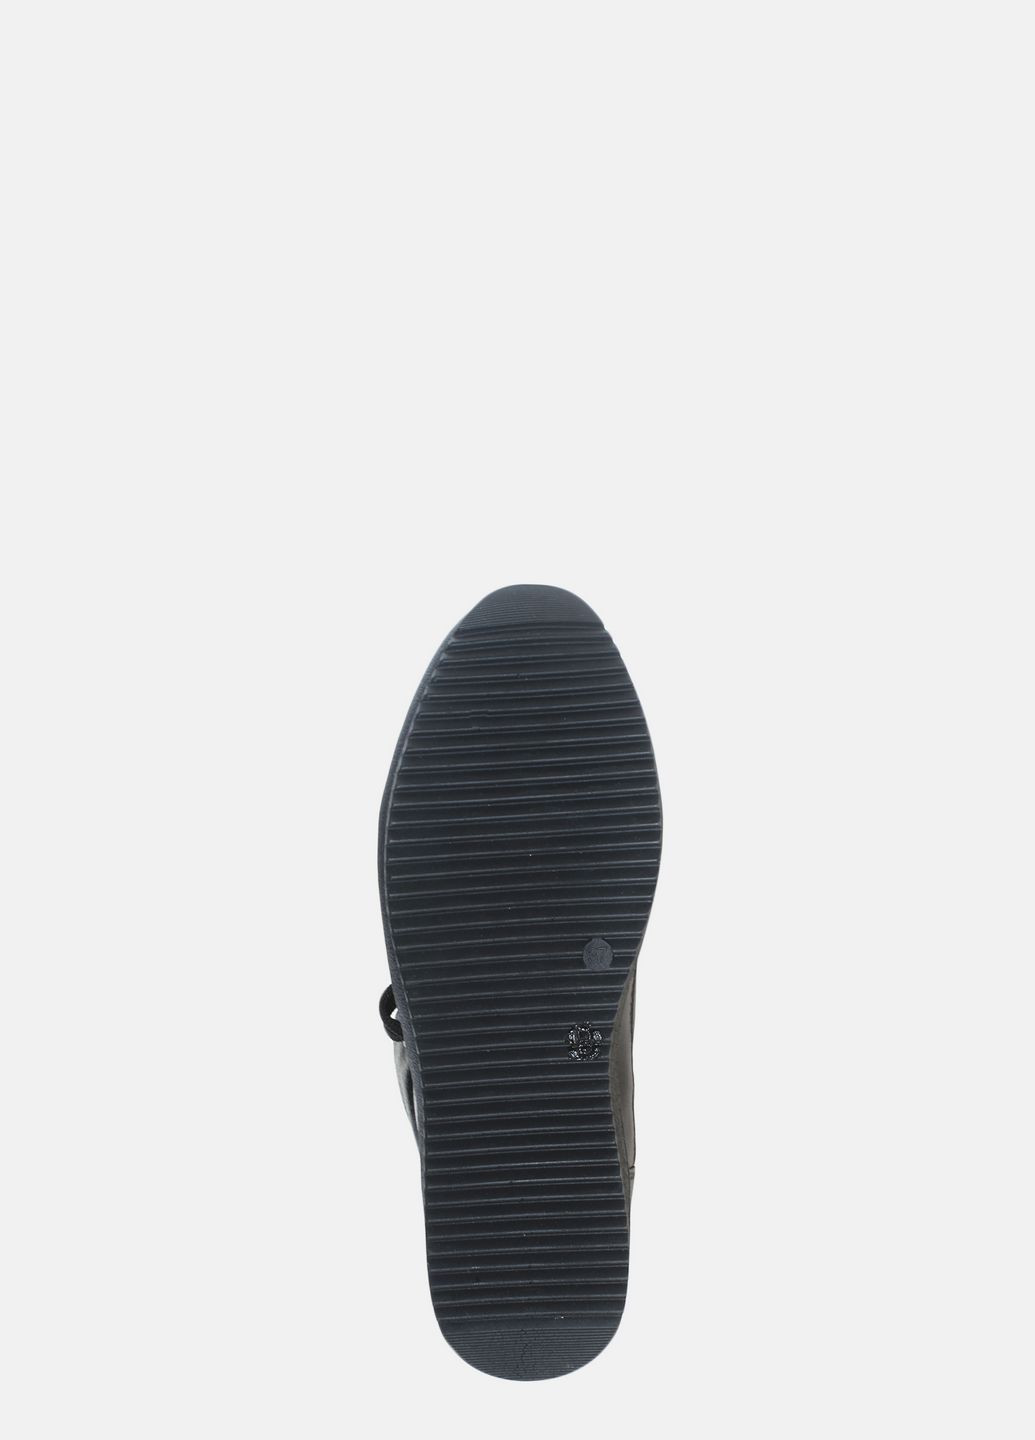 Зимние ботинки r1676 черный Prellesta